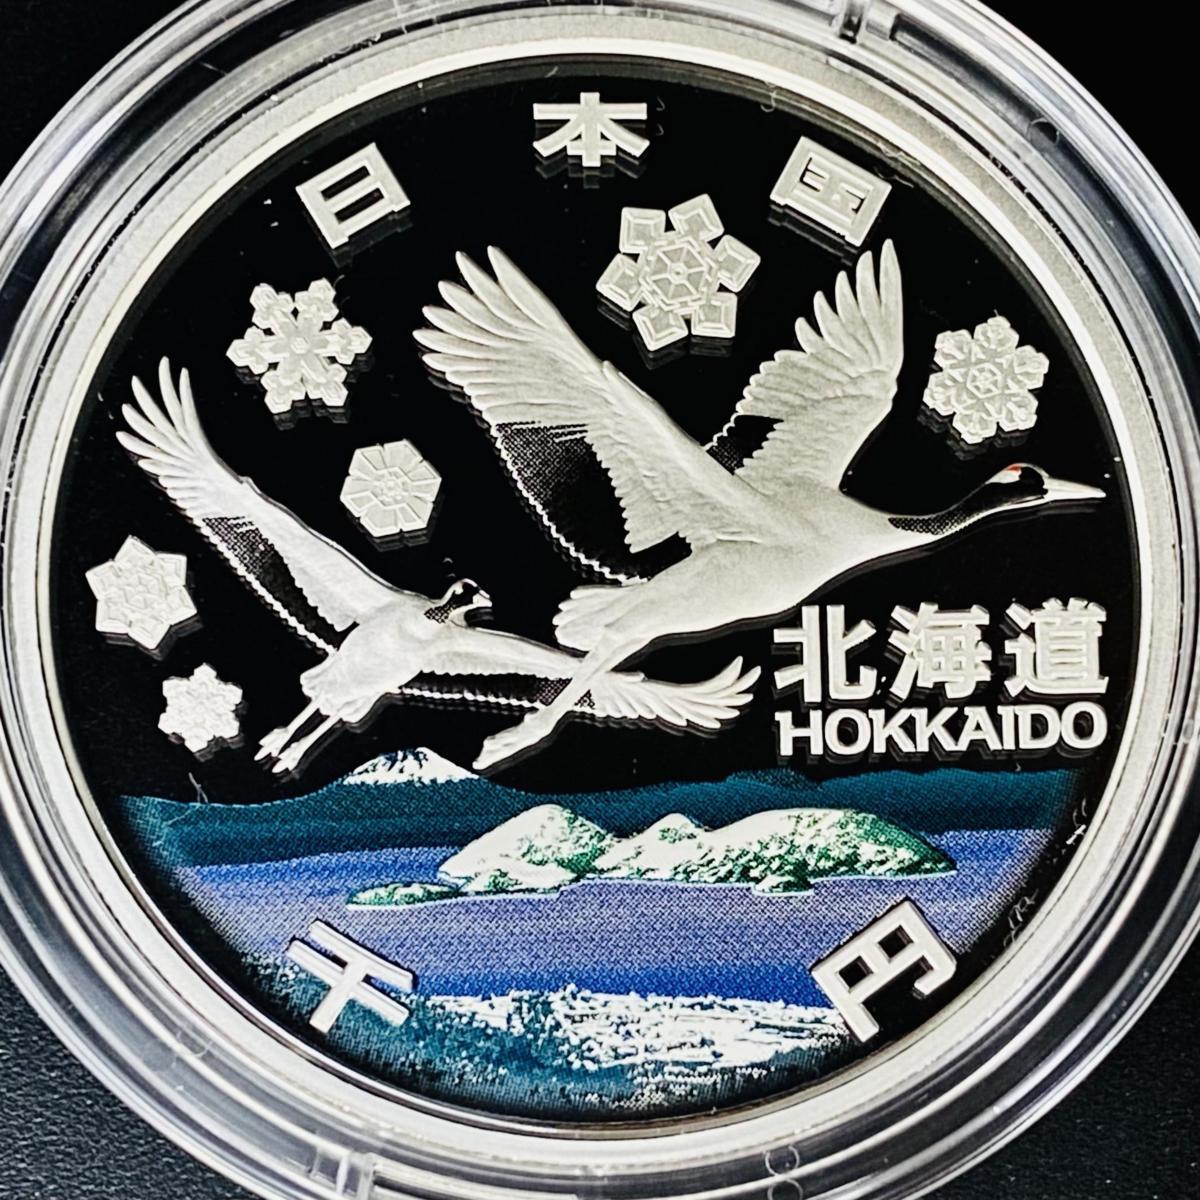 2015 日本 地方自治法施行60周年記念 山口県 銀貨 NGC PF70UC | 2015 